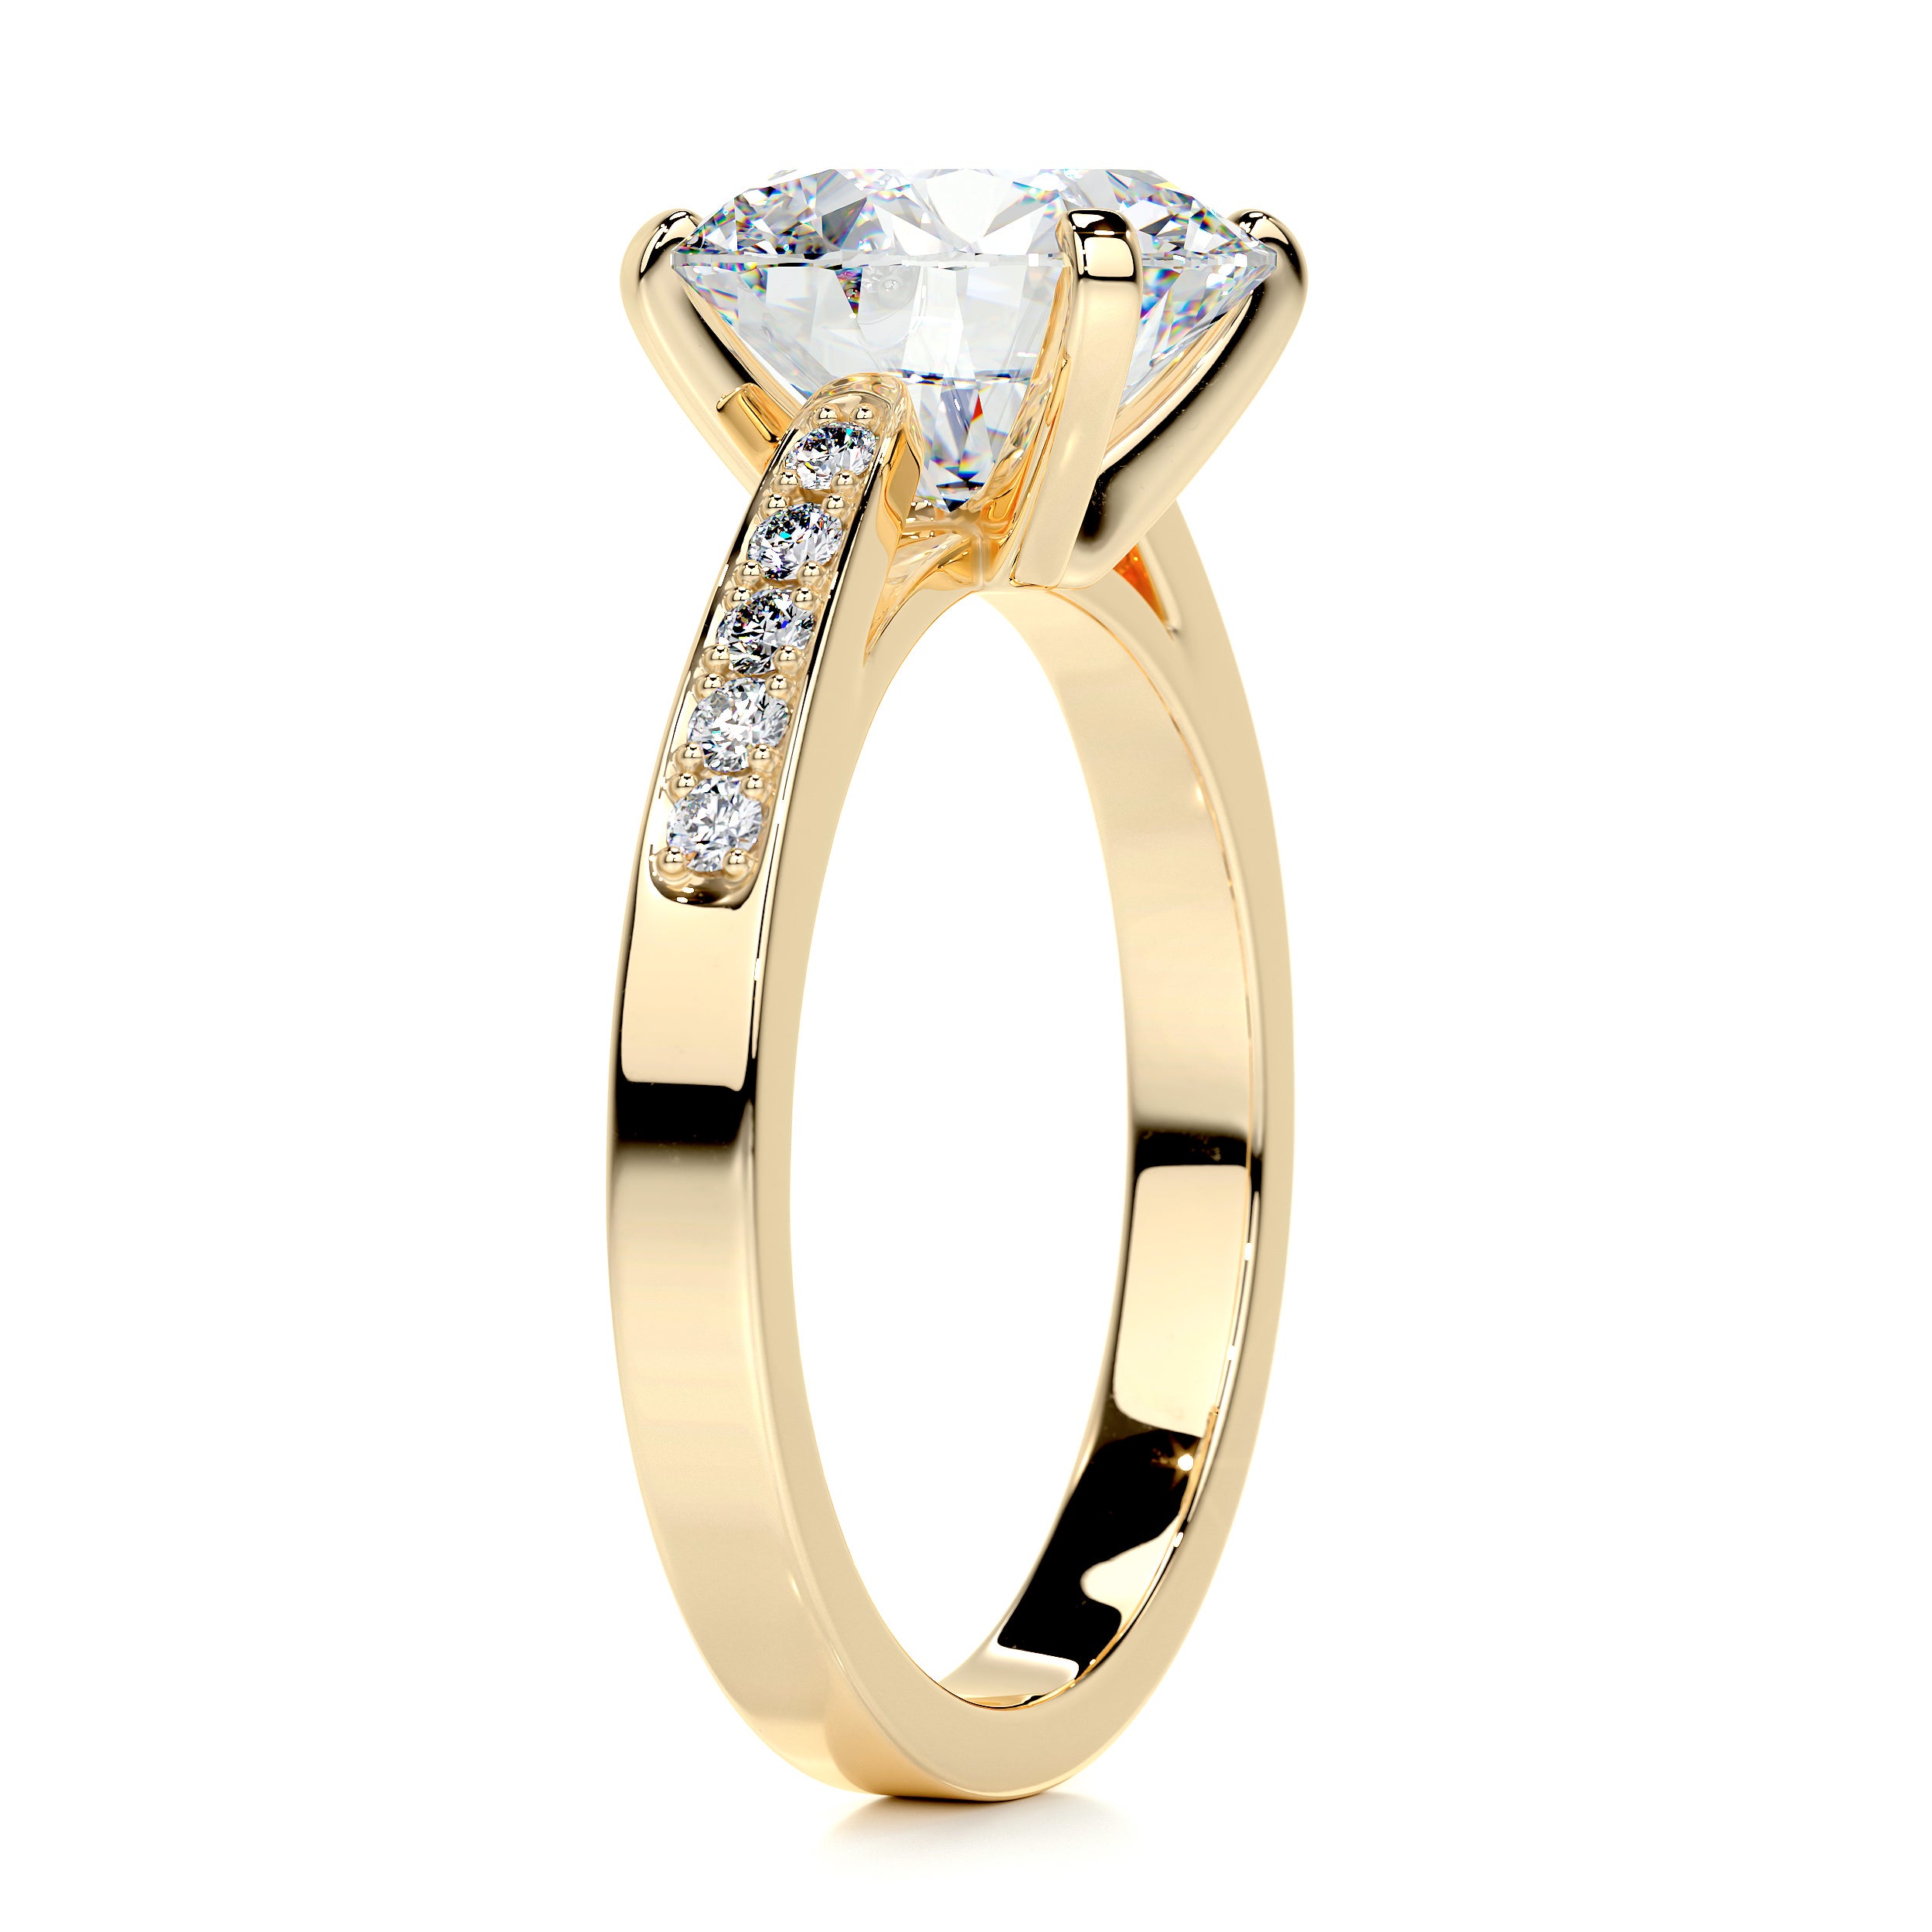 Margaret Moissanite & Diamonds Ring   (3.22 Carat) -18K Yellow Gold